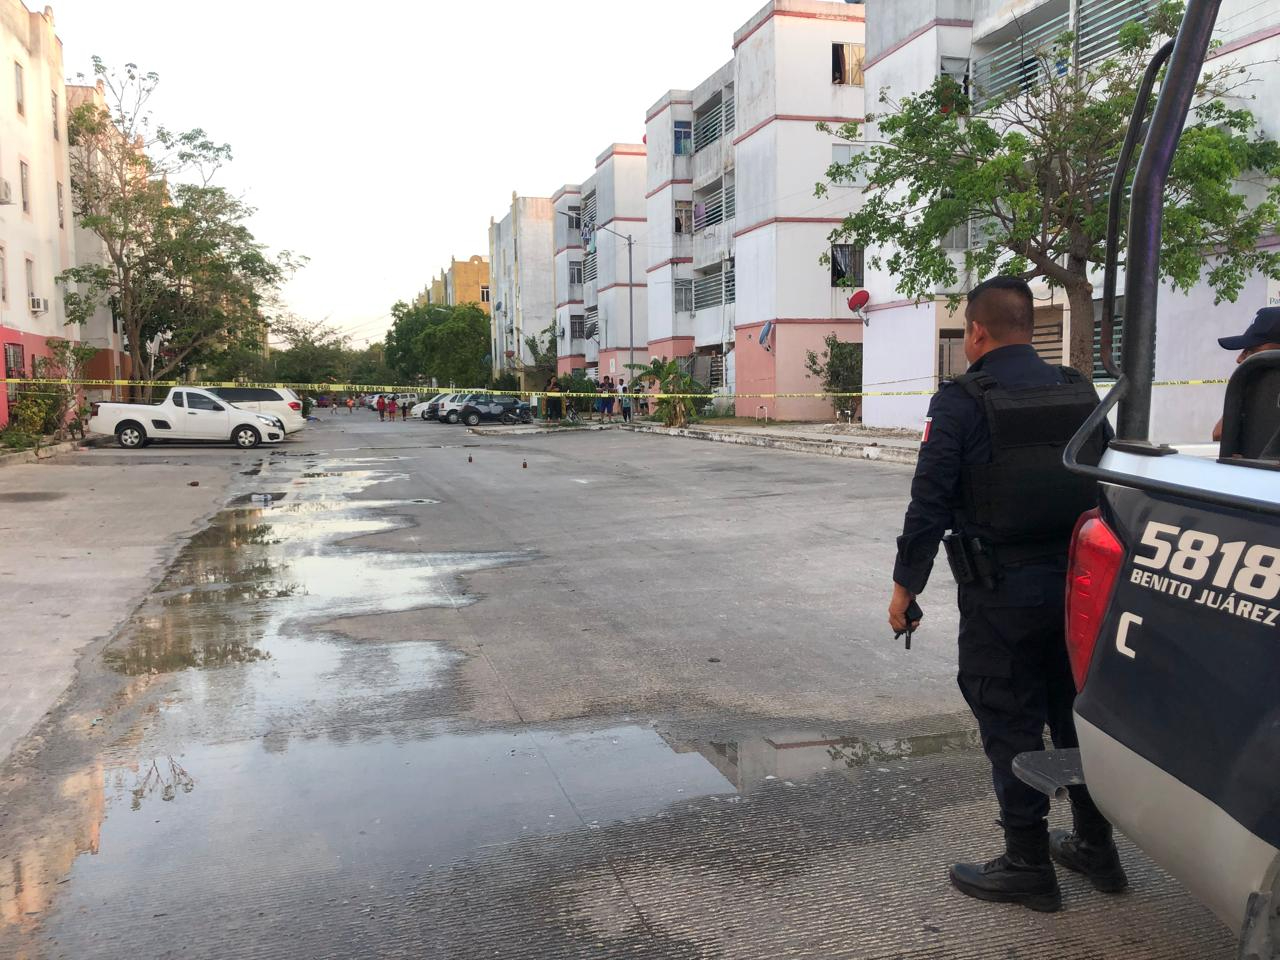 Elementos policiacos custodian la zona en Cancún